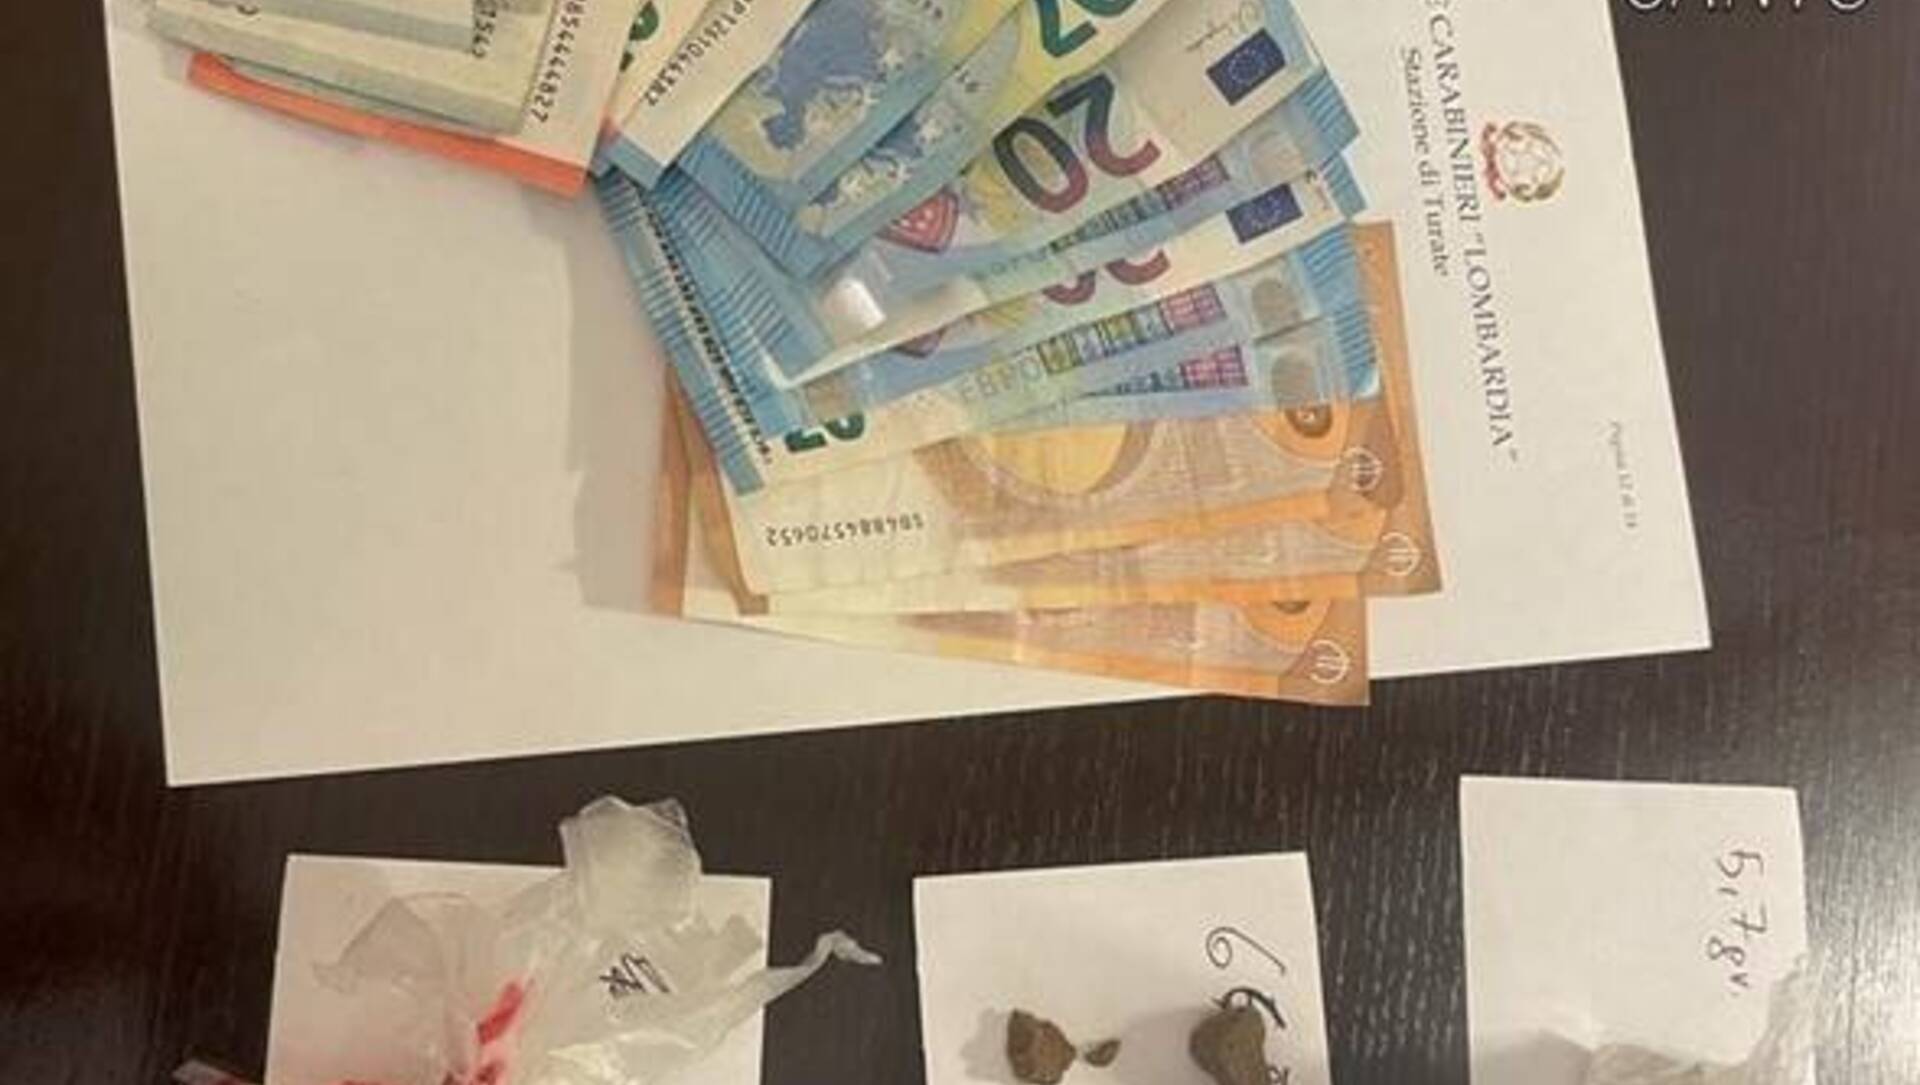 Cocaina, hashish e tutto il necessario per preparare le dosi: arrestato 38enne a Turate